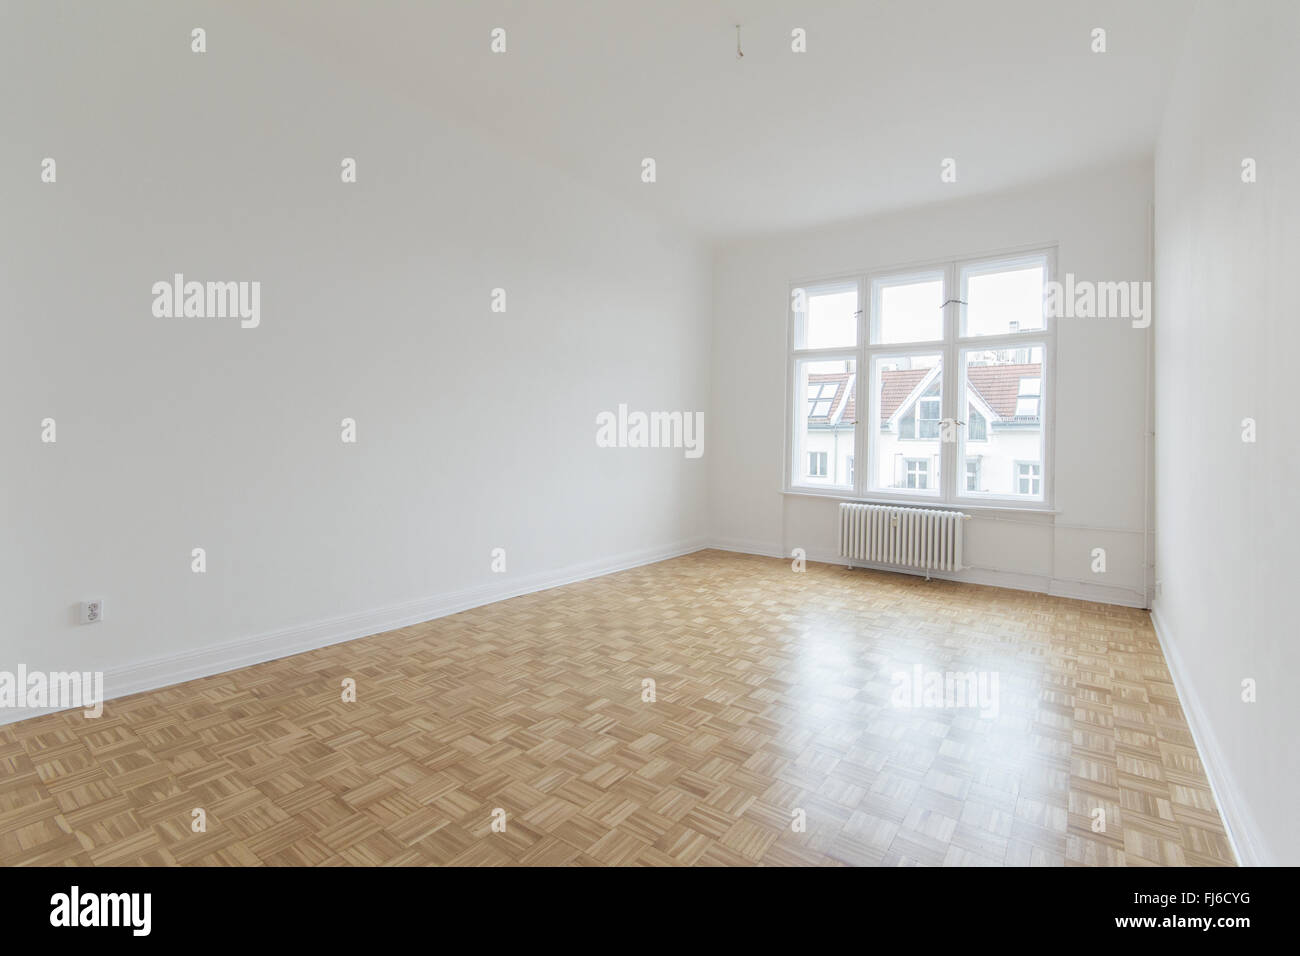 Salle vide avec plancher en bois, fraîchement rénové appartement Banque D'Images